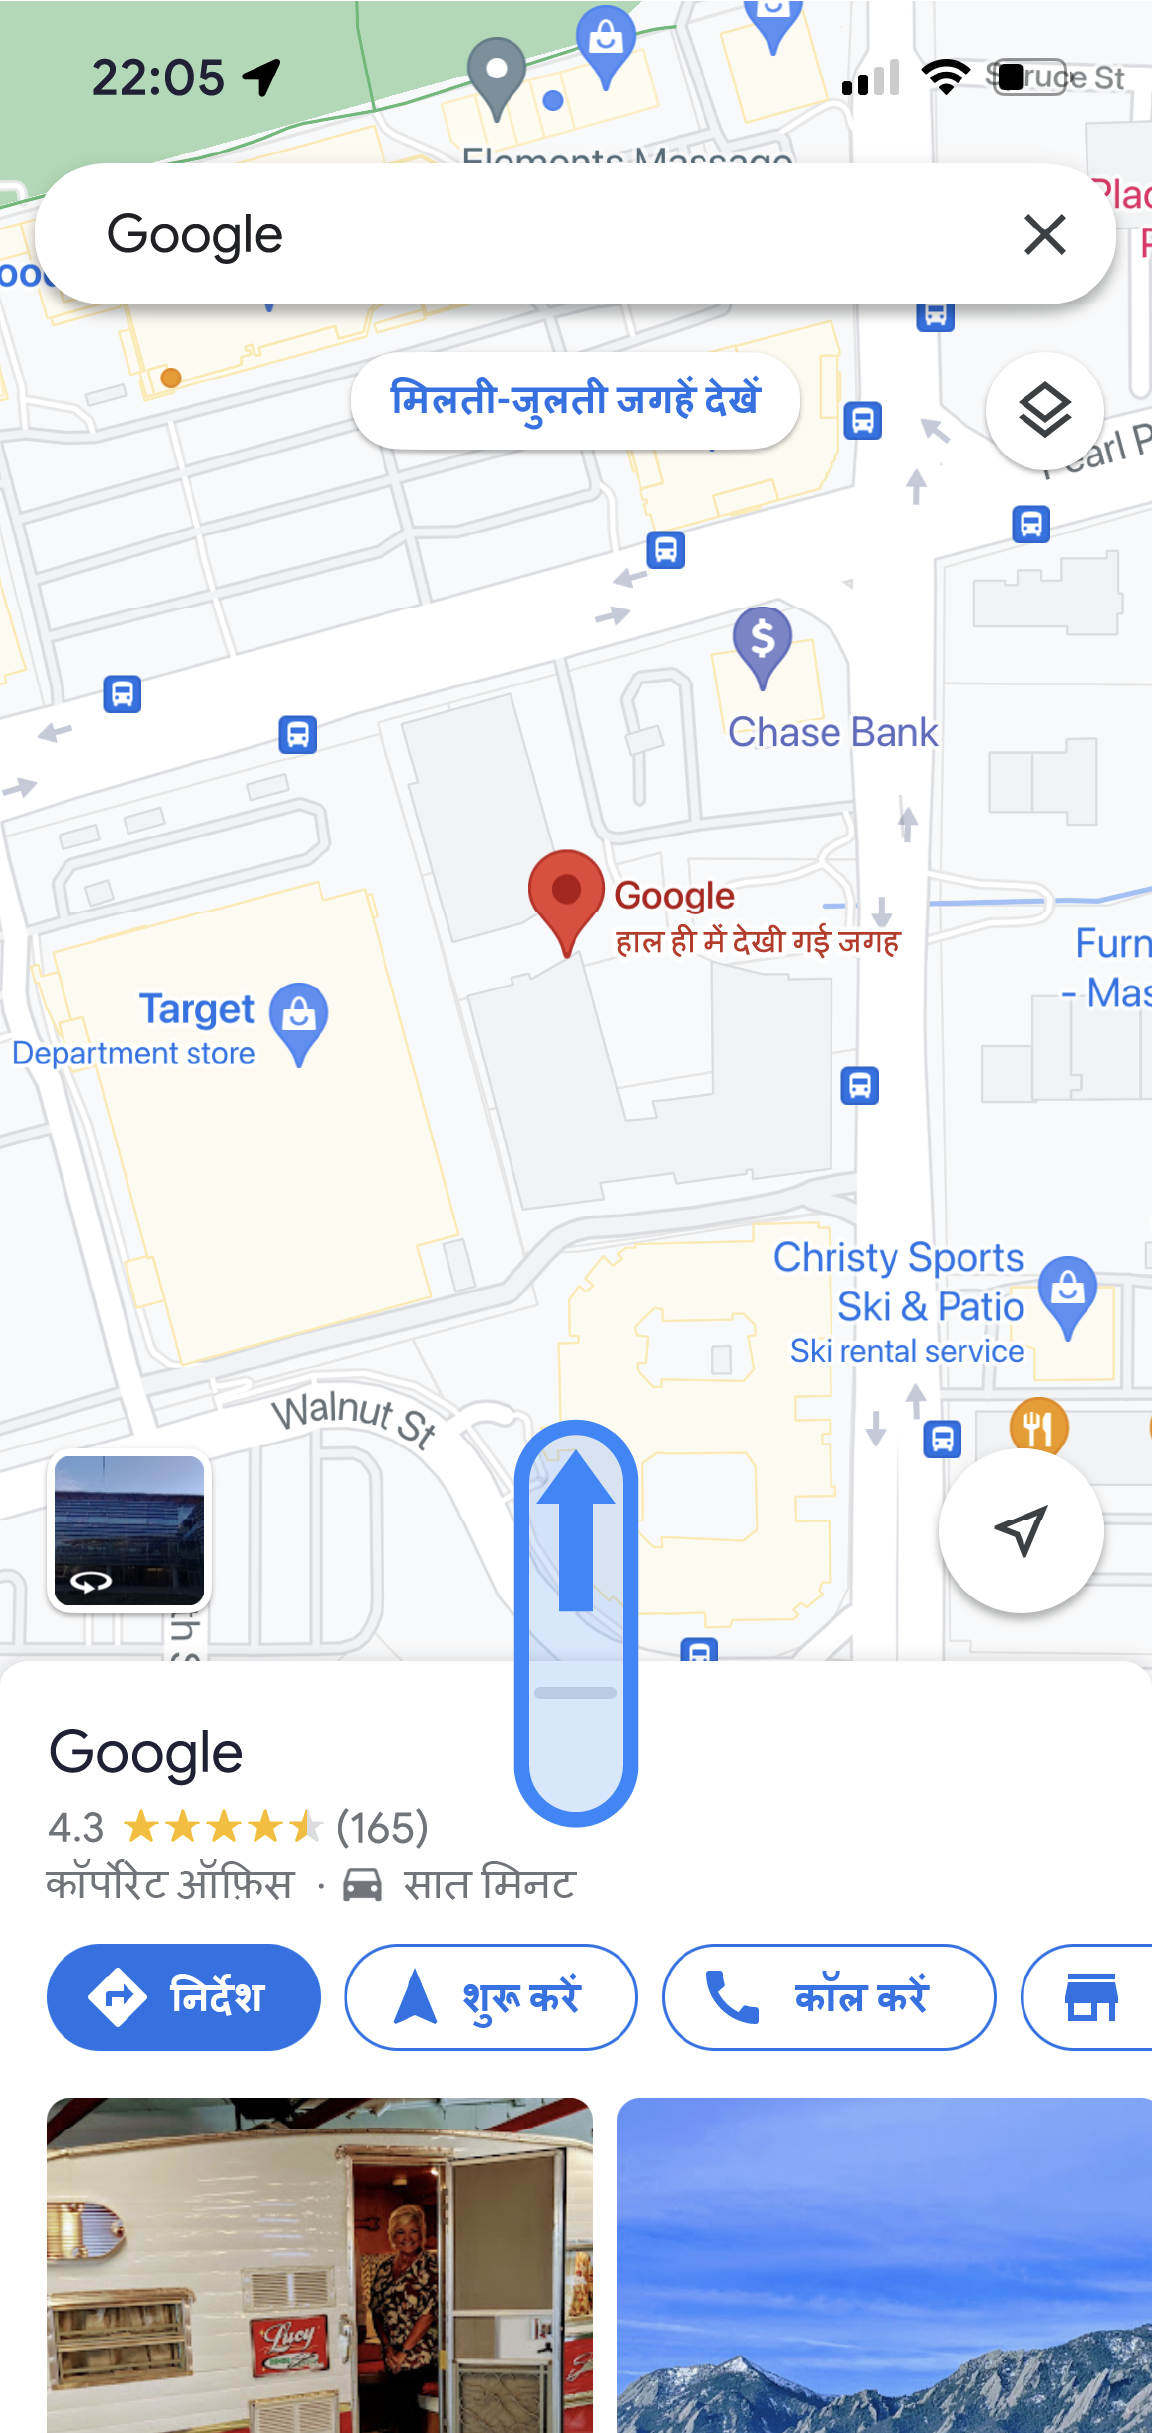 Google Maps ऐप्लिकेशन में, Google के ऑफ़िस की जानकारी दी गई है. स्क्रीन पर नीचे, जगह का नाम और औसत रेटिंग दी गई हैं. साथ ही, निर्देश पाने, नेविगेशन शुरू करने, कॉल करने जैसे अन्य बटन भी दिए गए हैं.